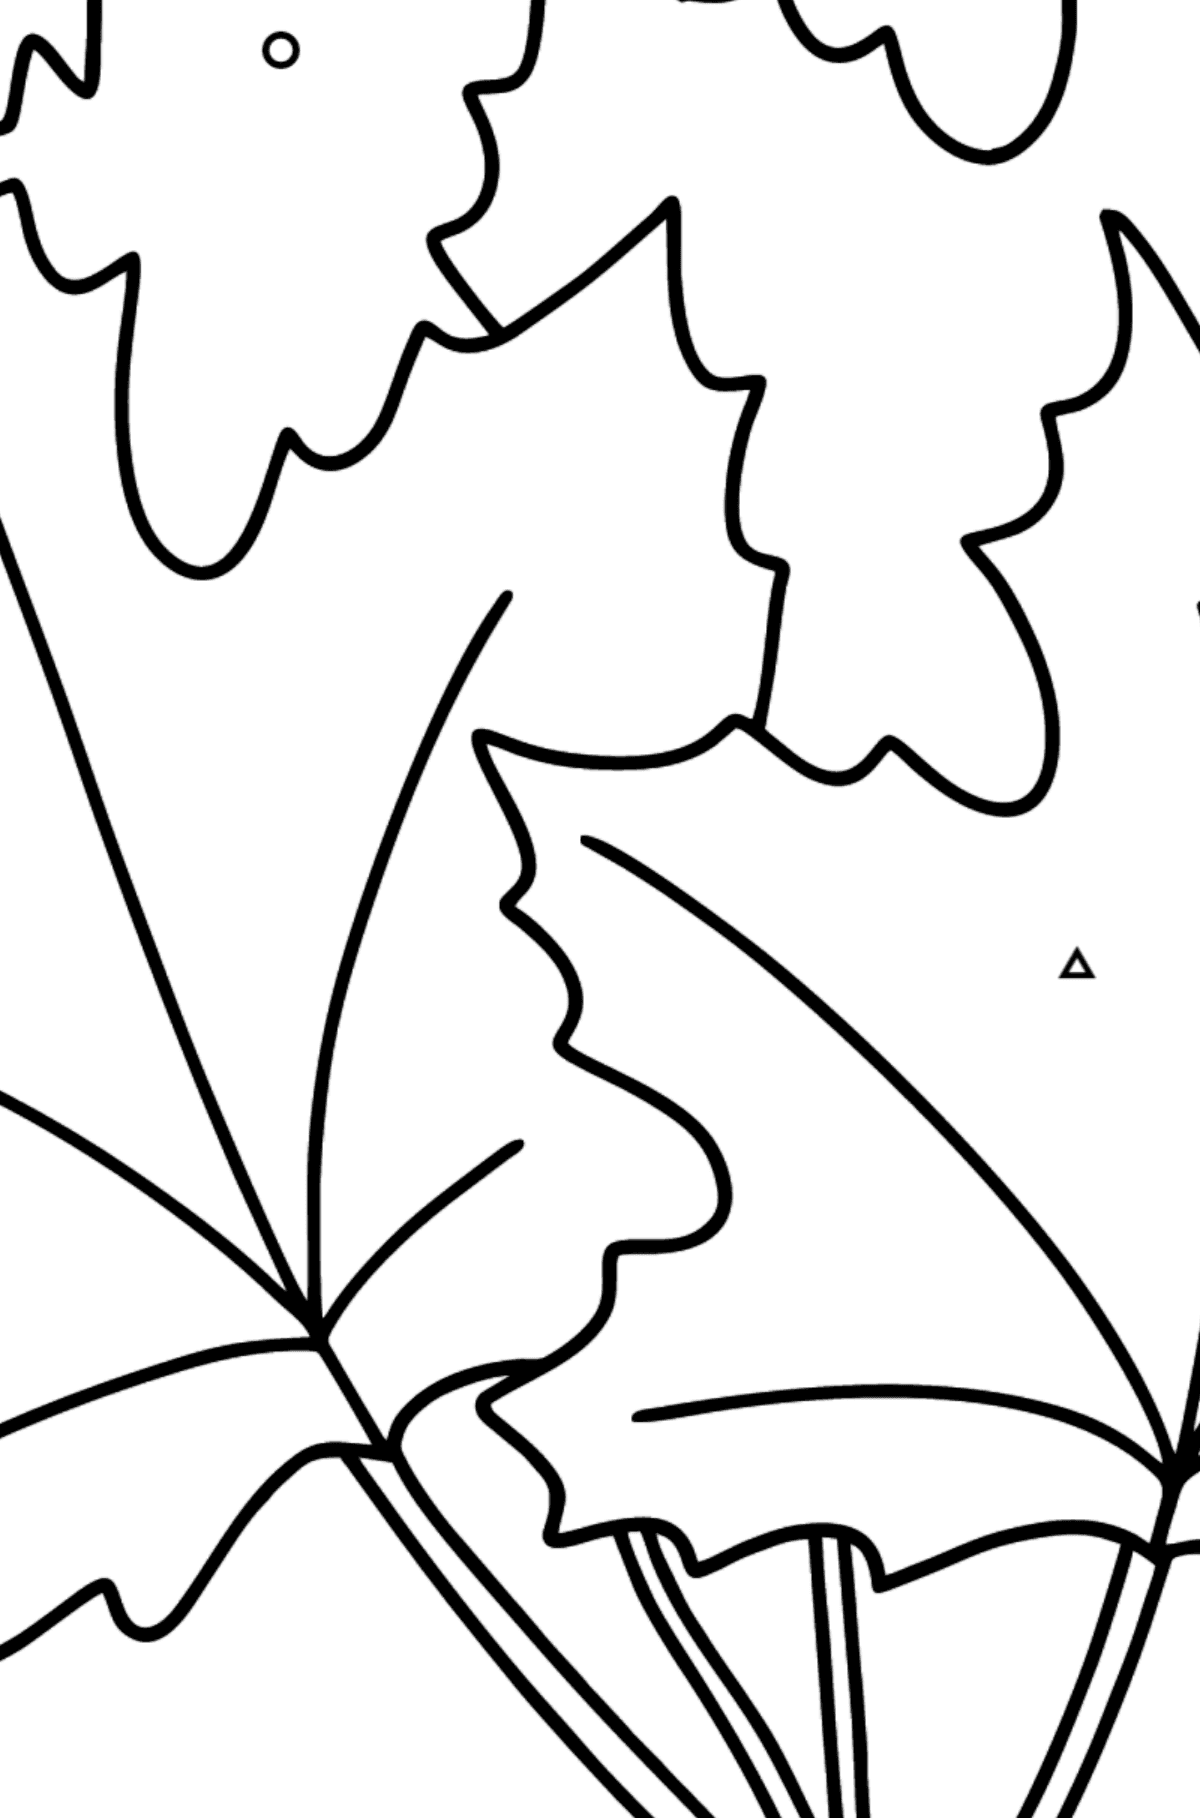 Dibujo de Ramo de Arce para colorear - Colorear por Formas Geométricas para Niños